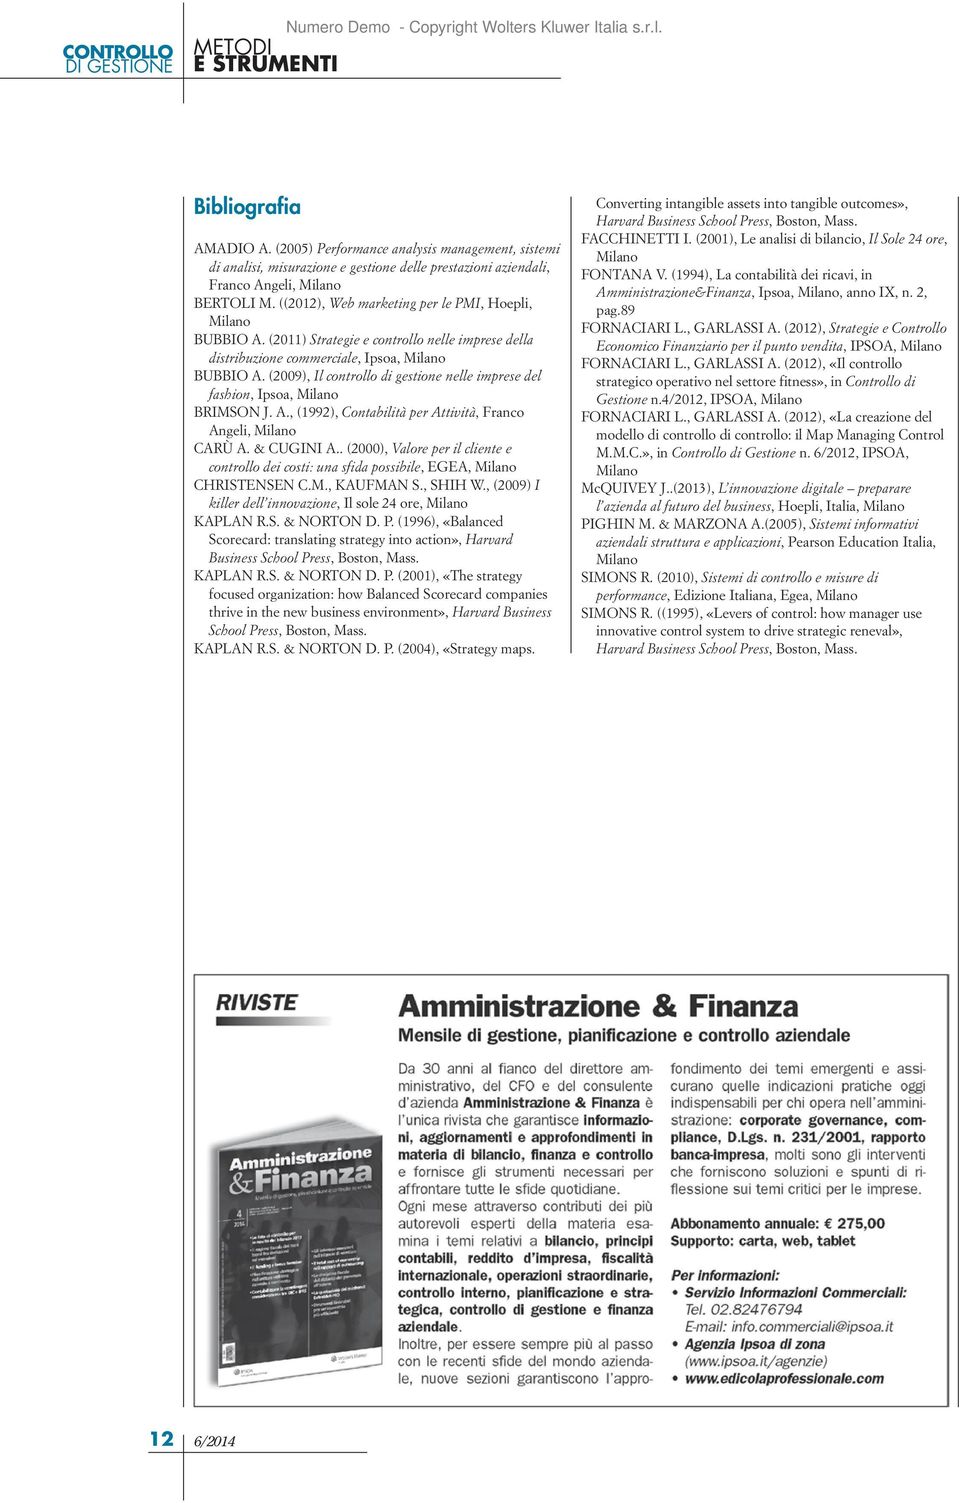 ((2012), Web marketing per le PMI, Hoepli, Milano BUBBIO A. (2011) Strategie e controllo nelle imprese della distribuzione commerciale, Ipsoa, Milano BUBBIO A.